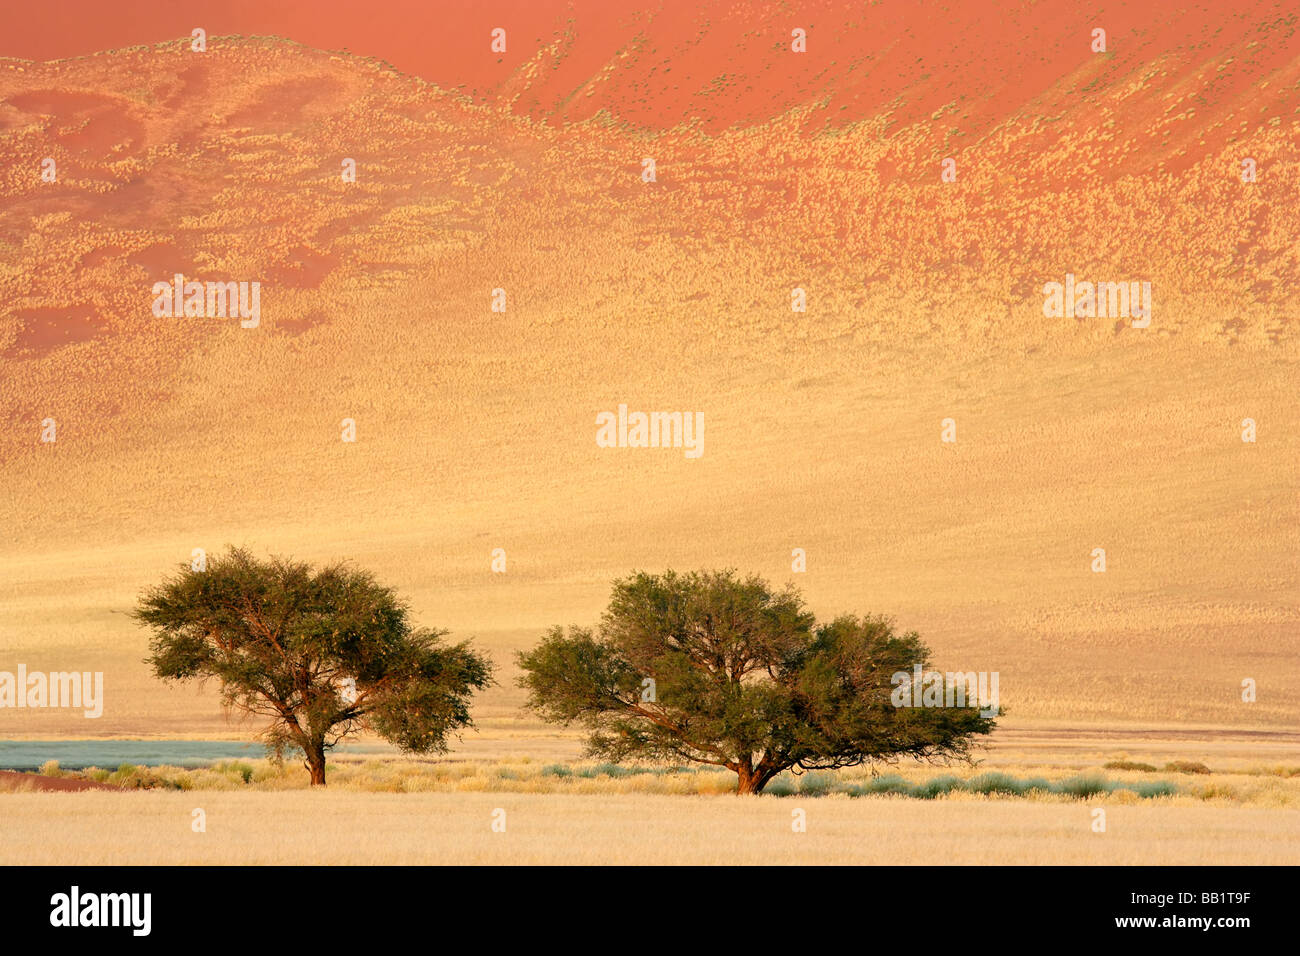 Paysage avec arbres d'Acacia d'Afrique (Acacia erioloba), Sossusvlei, Namibie, Afrique du Sud Banque D'Images